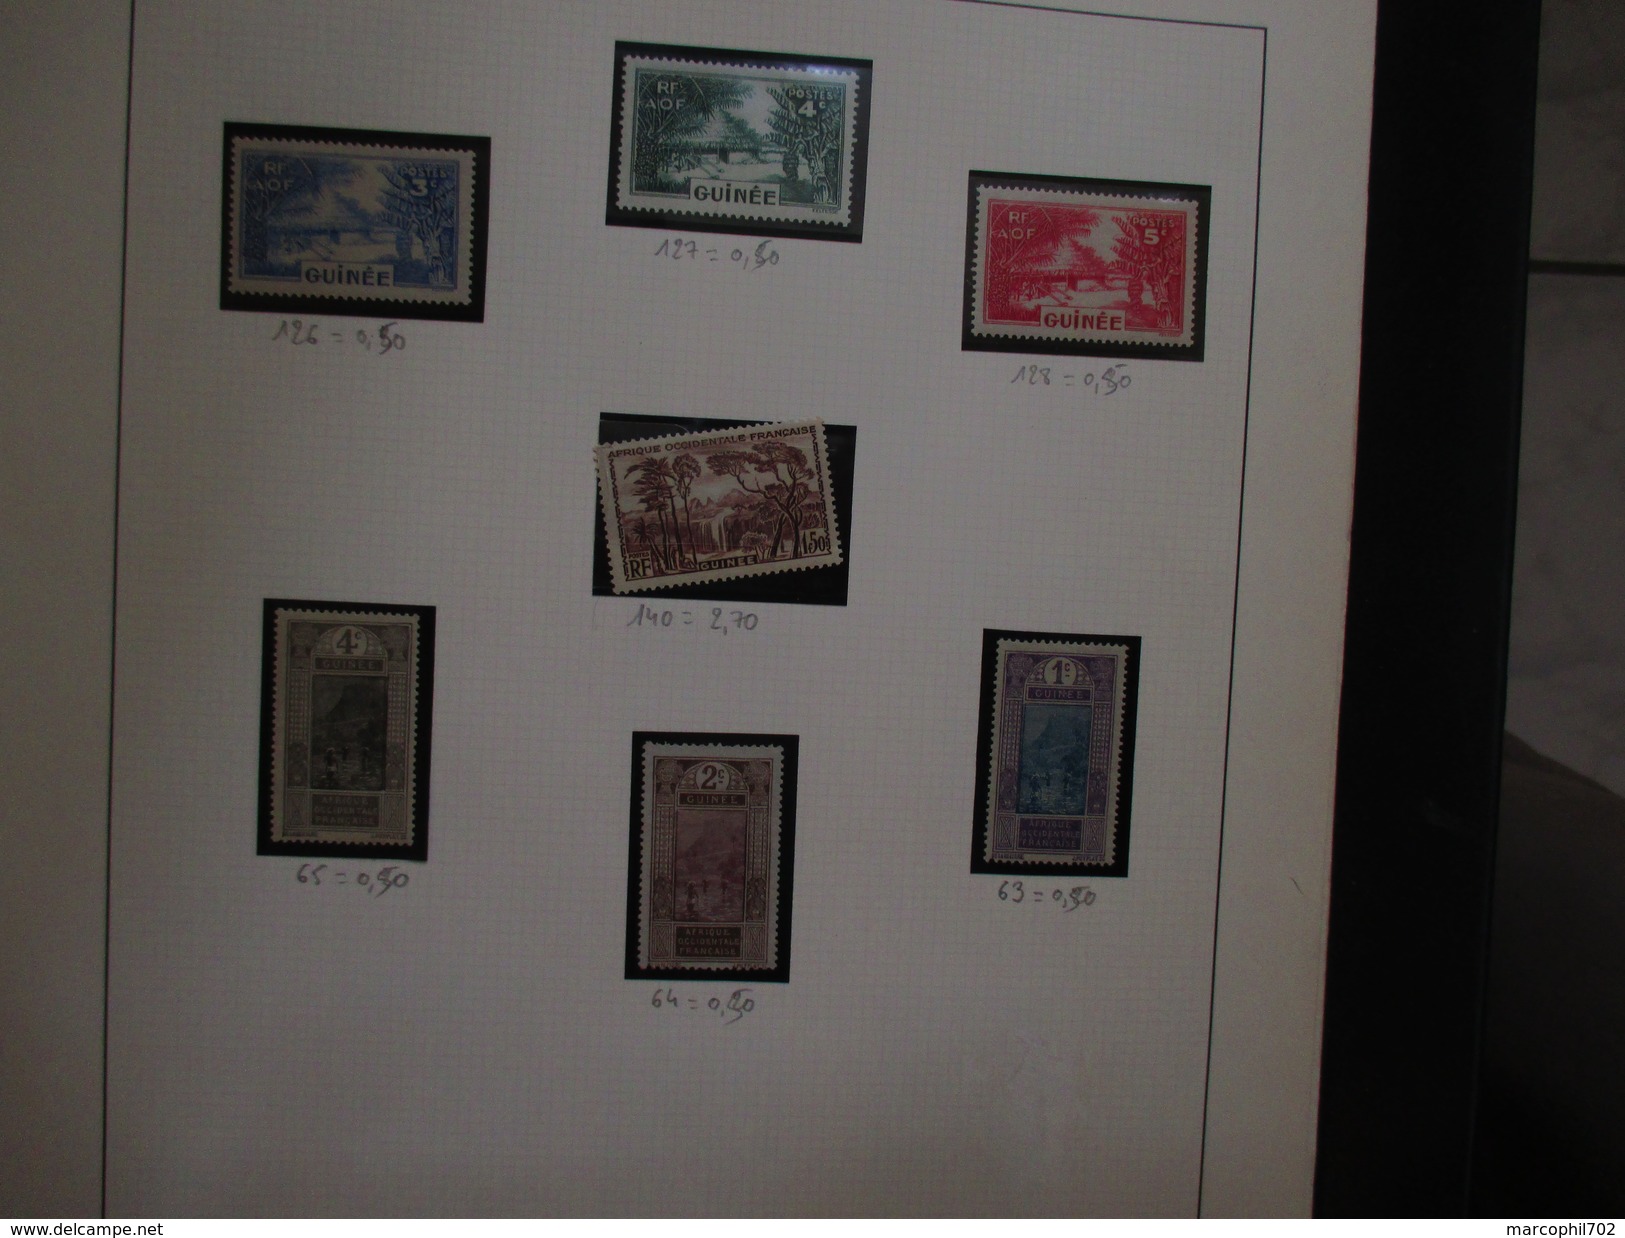 petit lot de timbres anciennes colonnies francaise principalement afrique ces timbres sont neuf ou charnieres ou oblitér